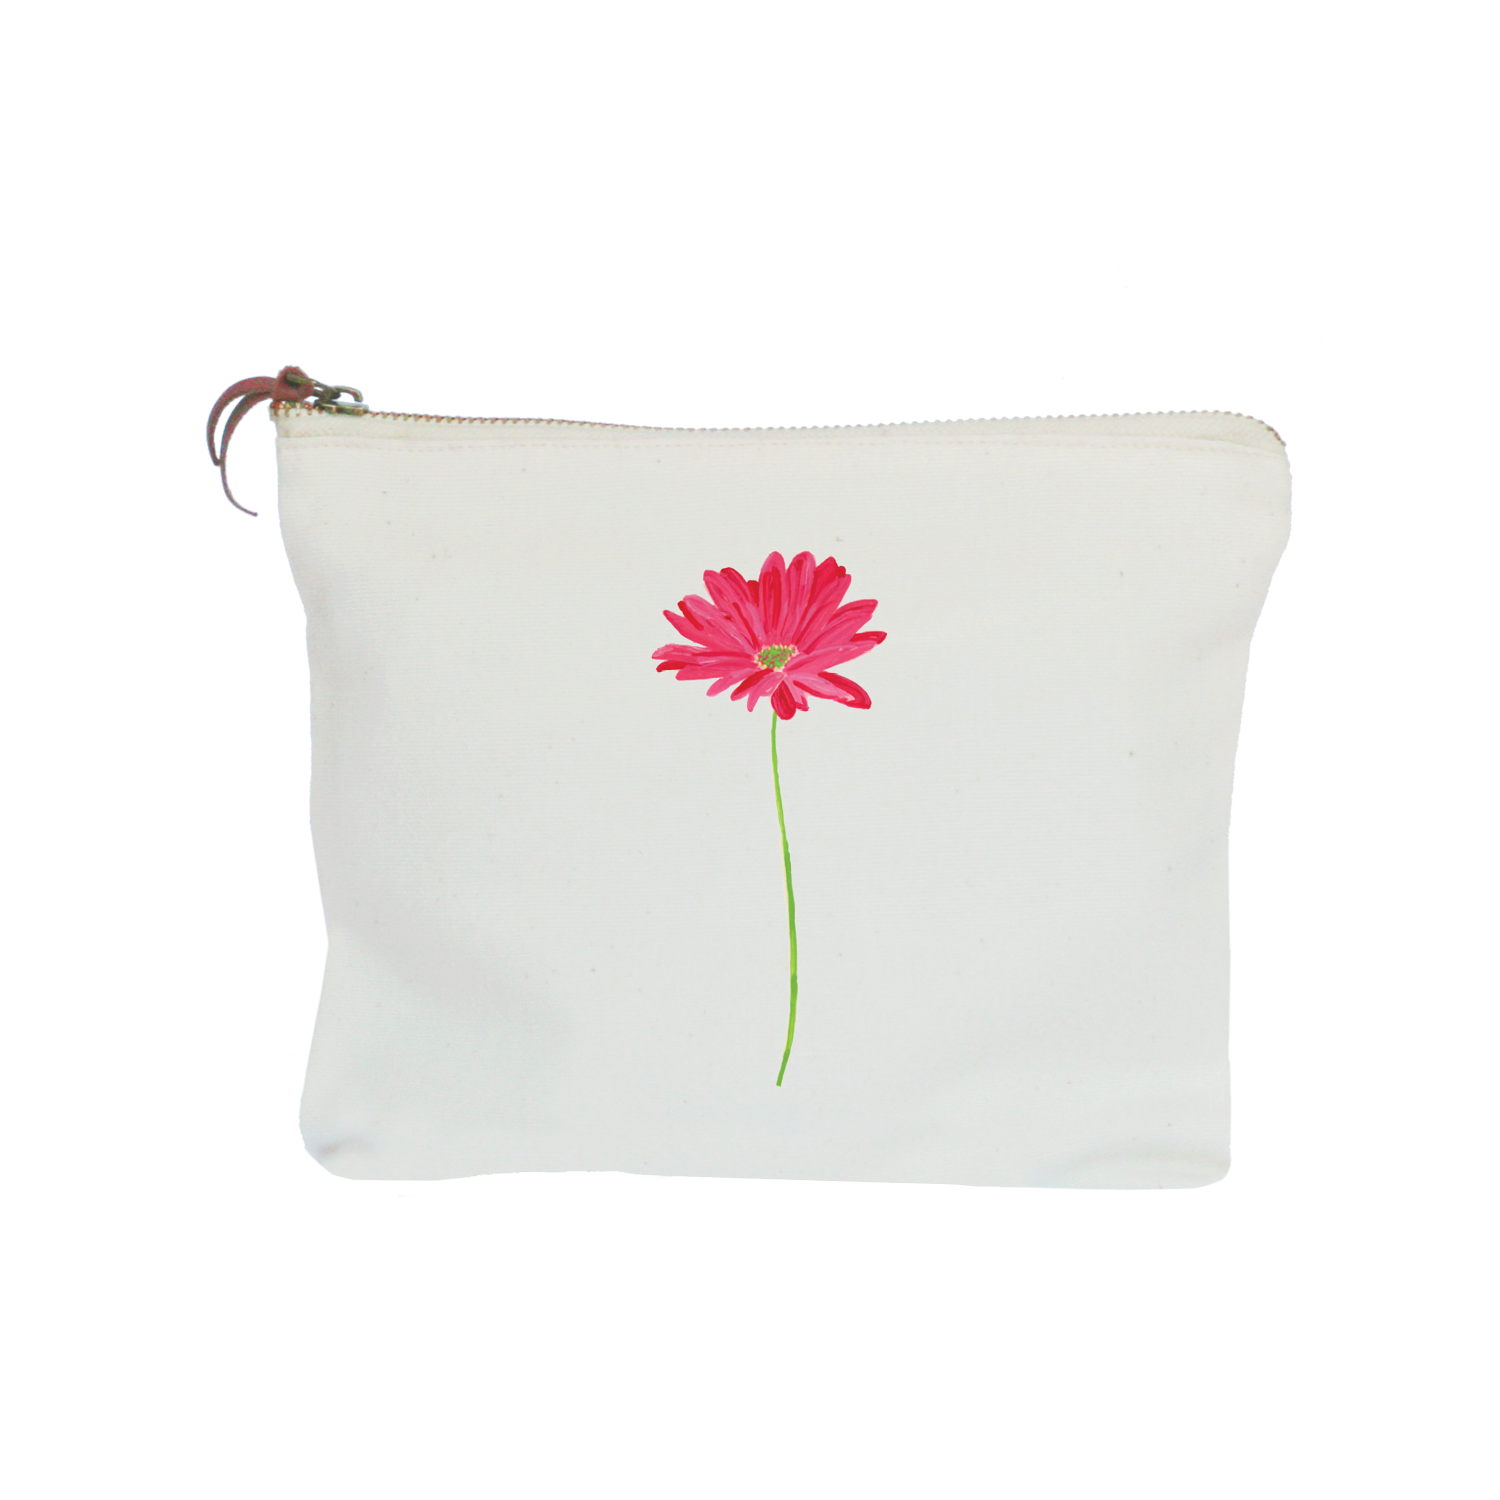 pink gerber daisy zipper pouch